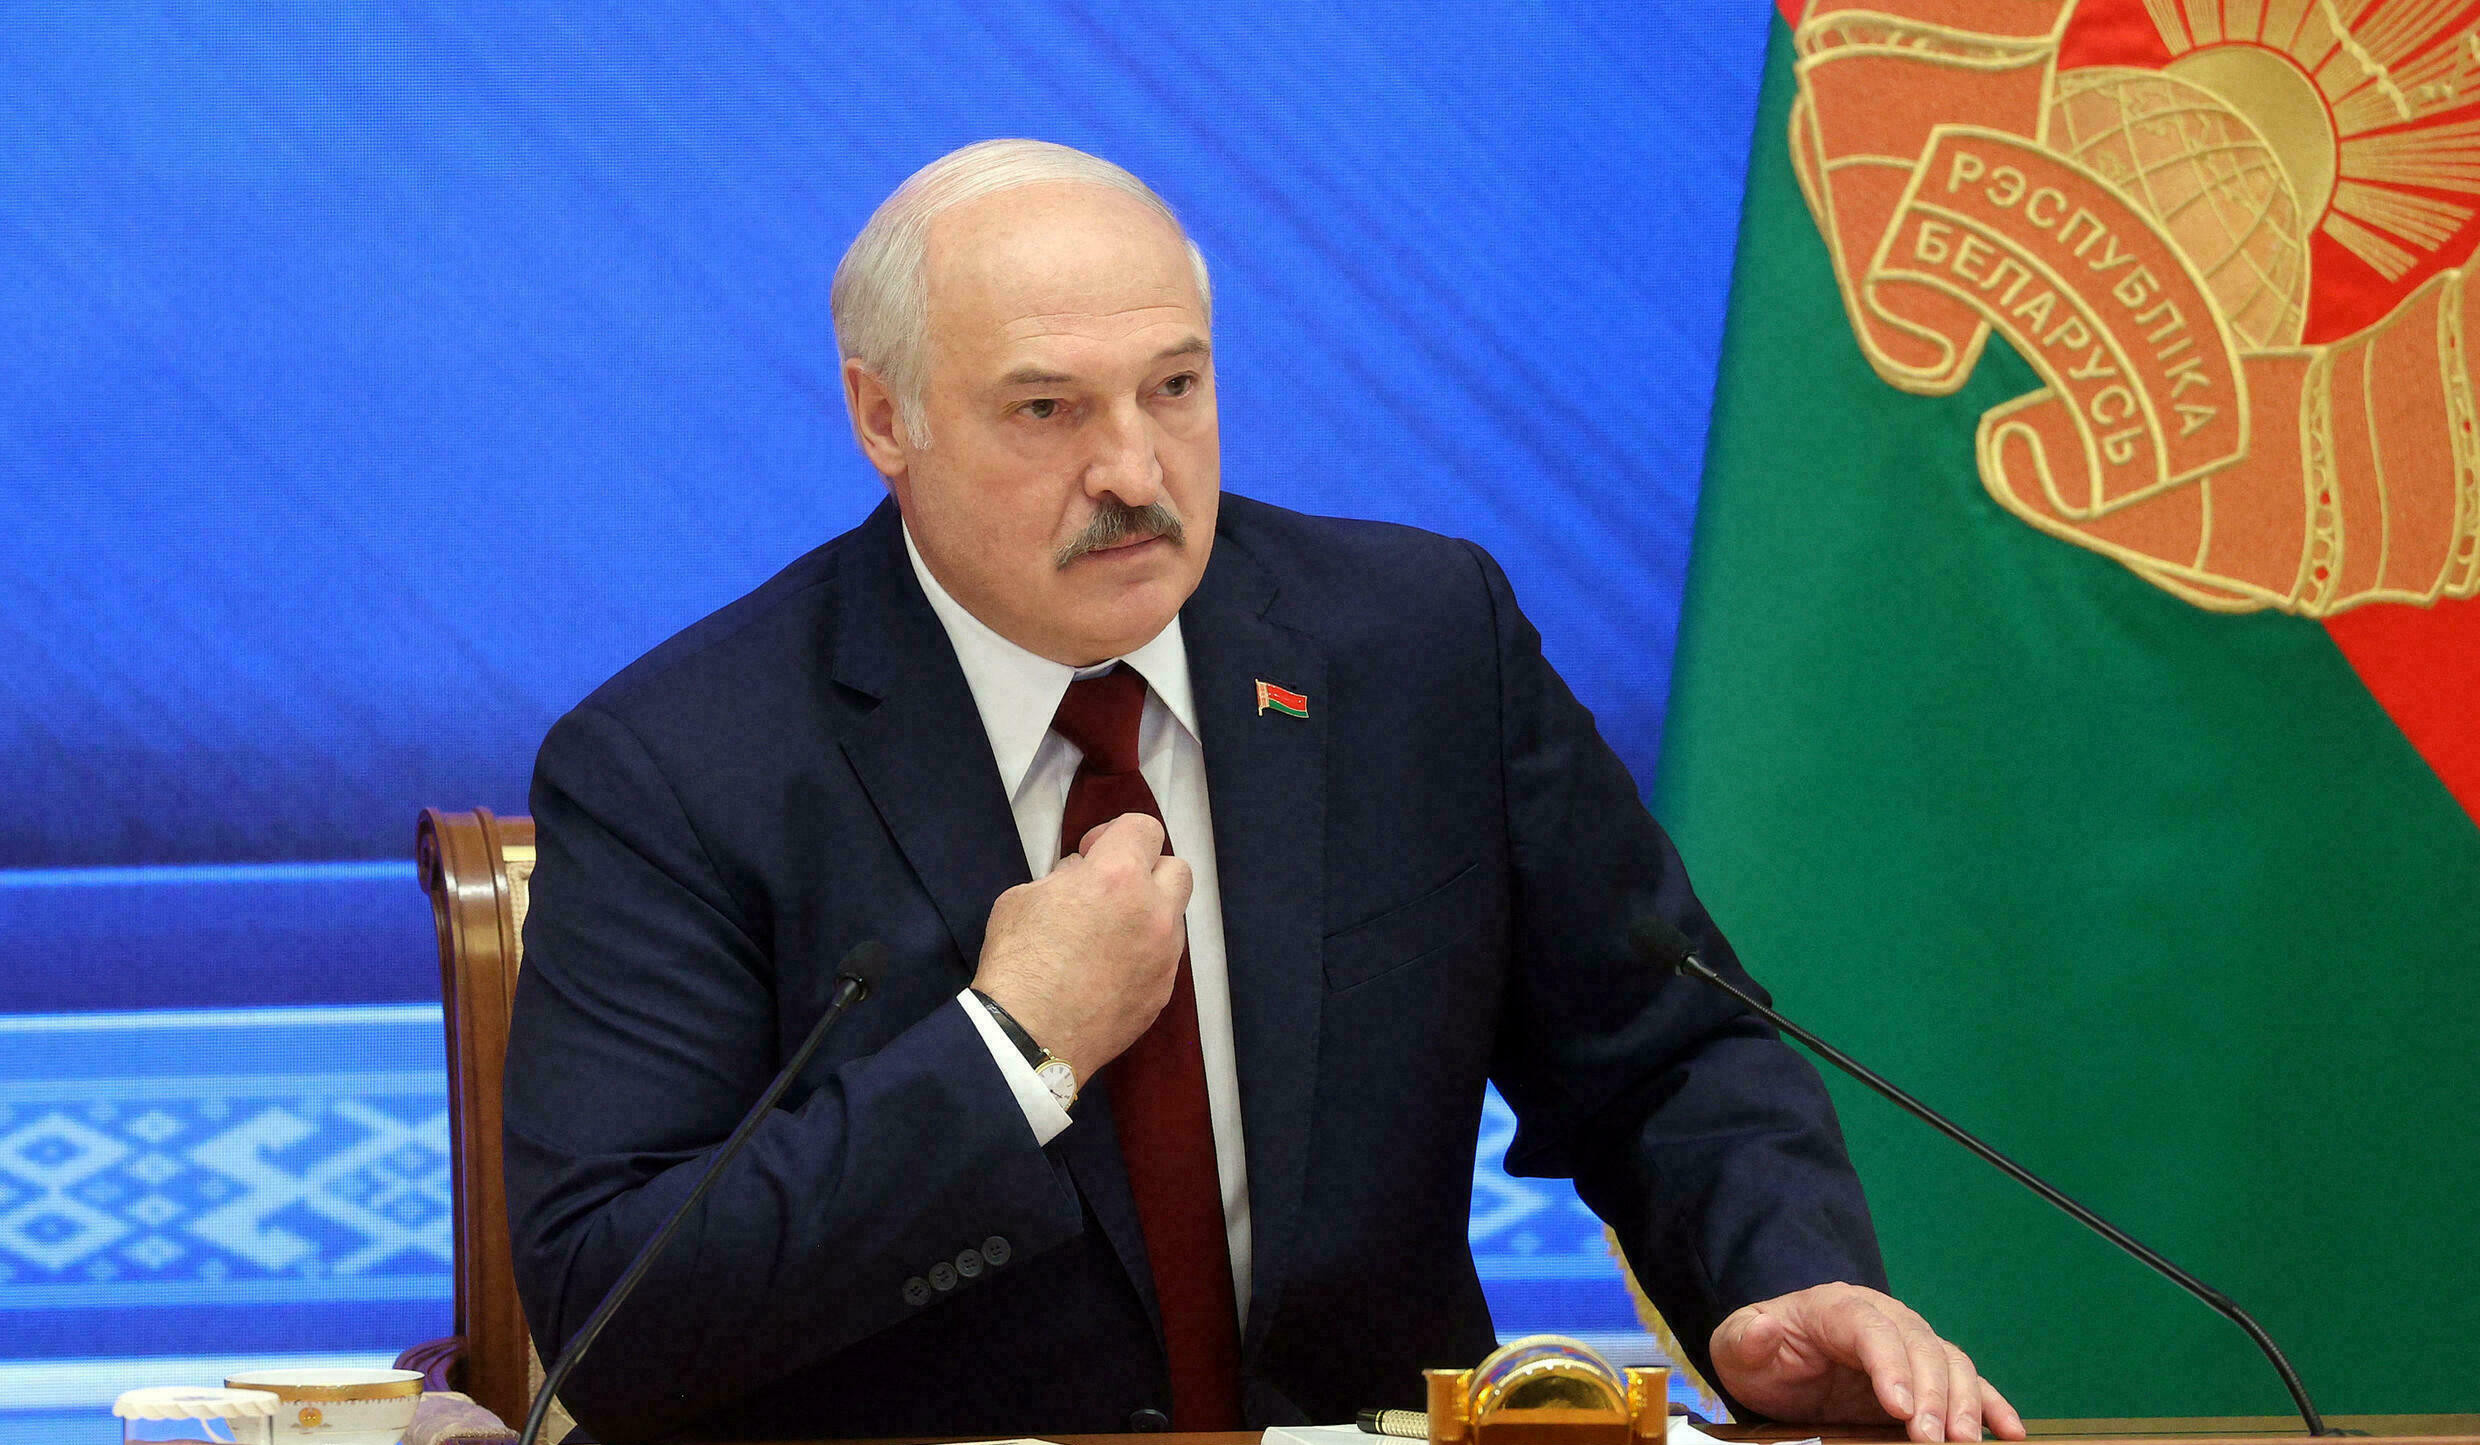 Лукашенко заявил, что перемены в Белоруссии будут эволюционными